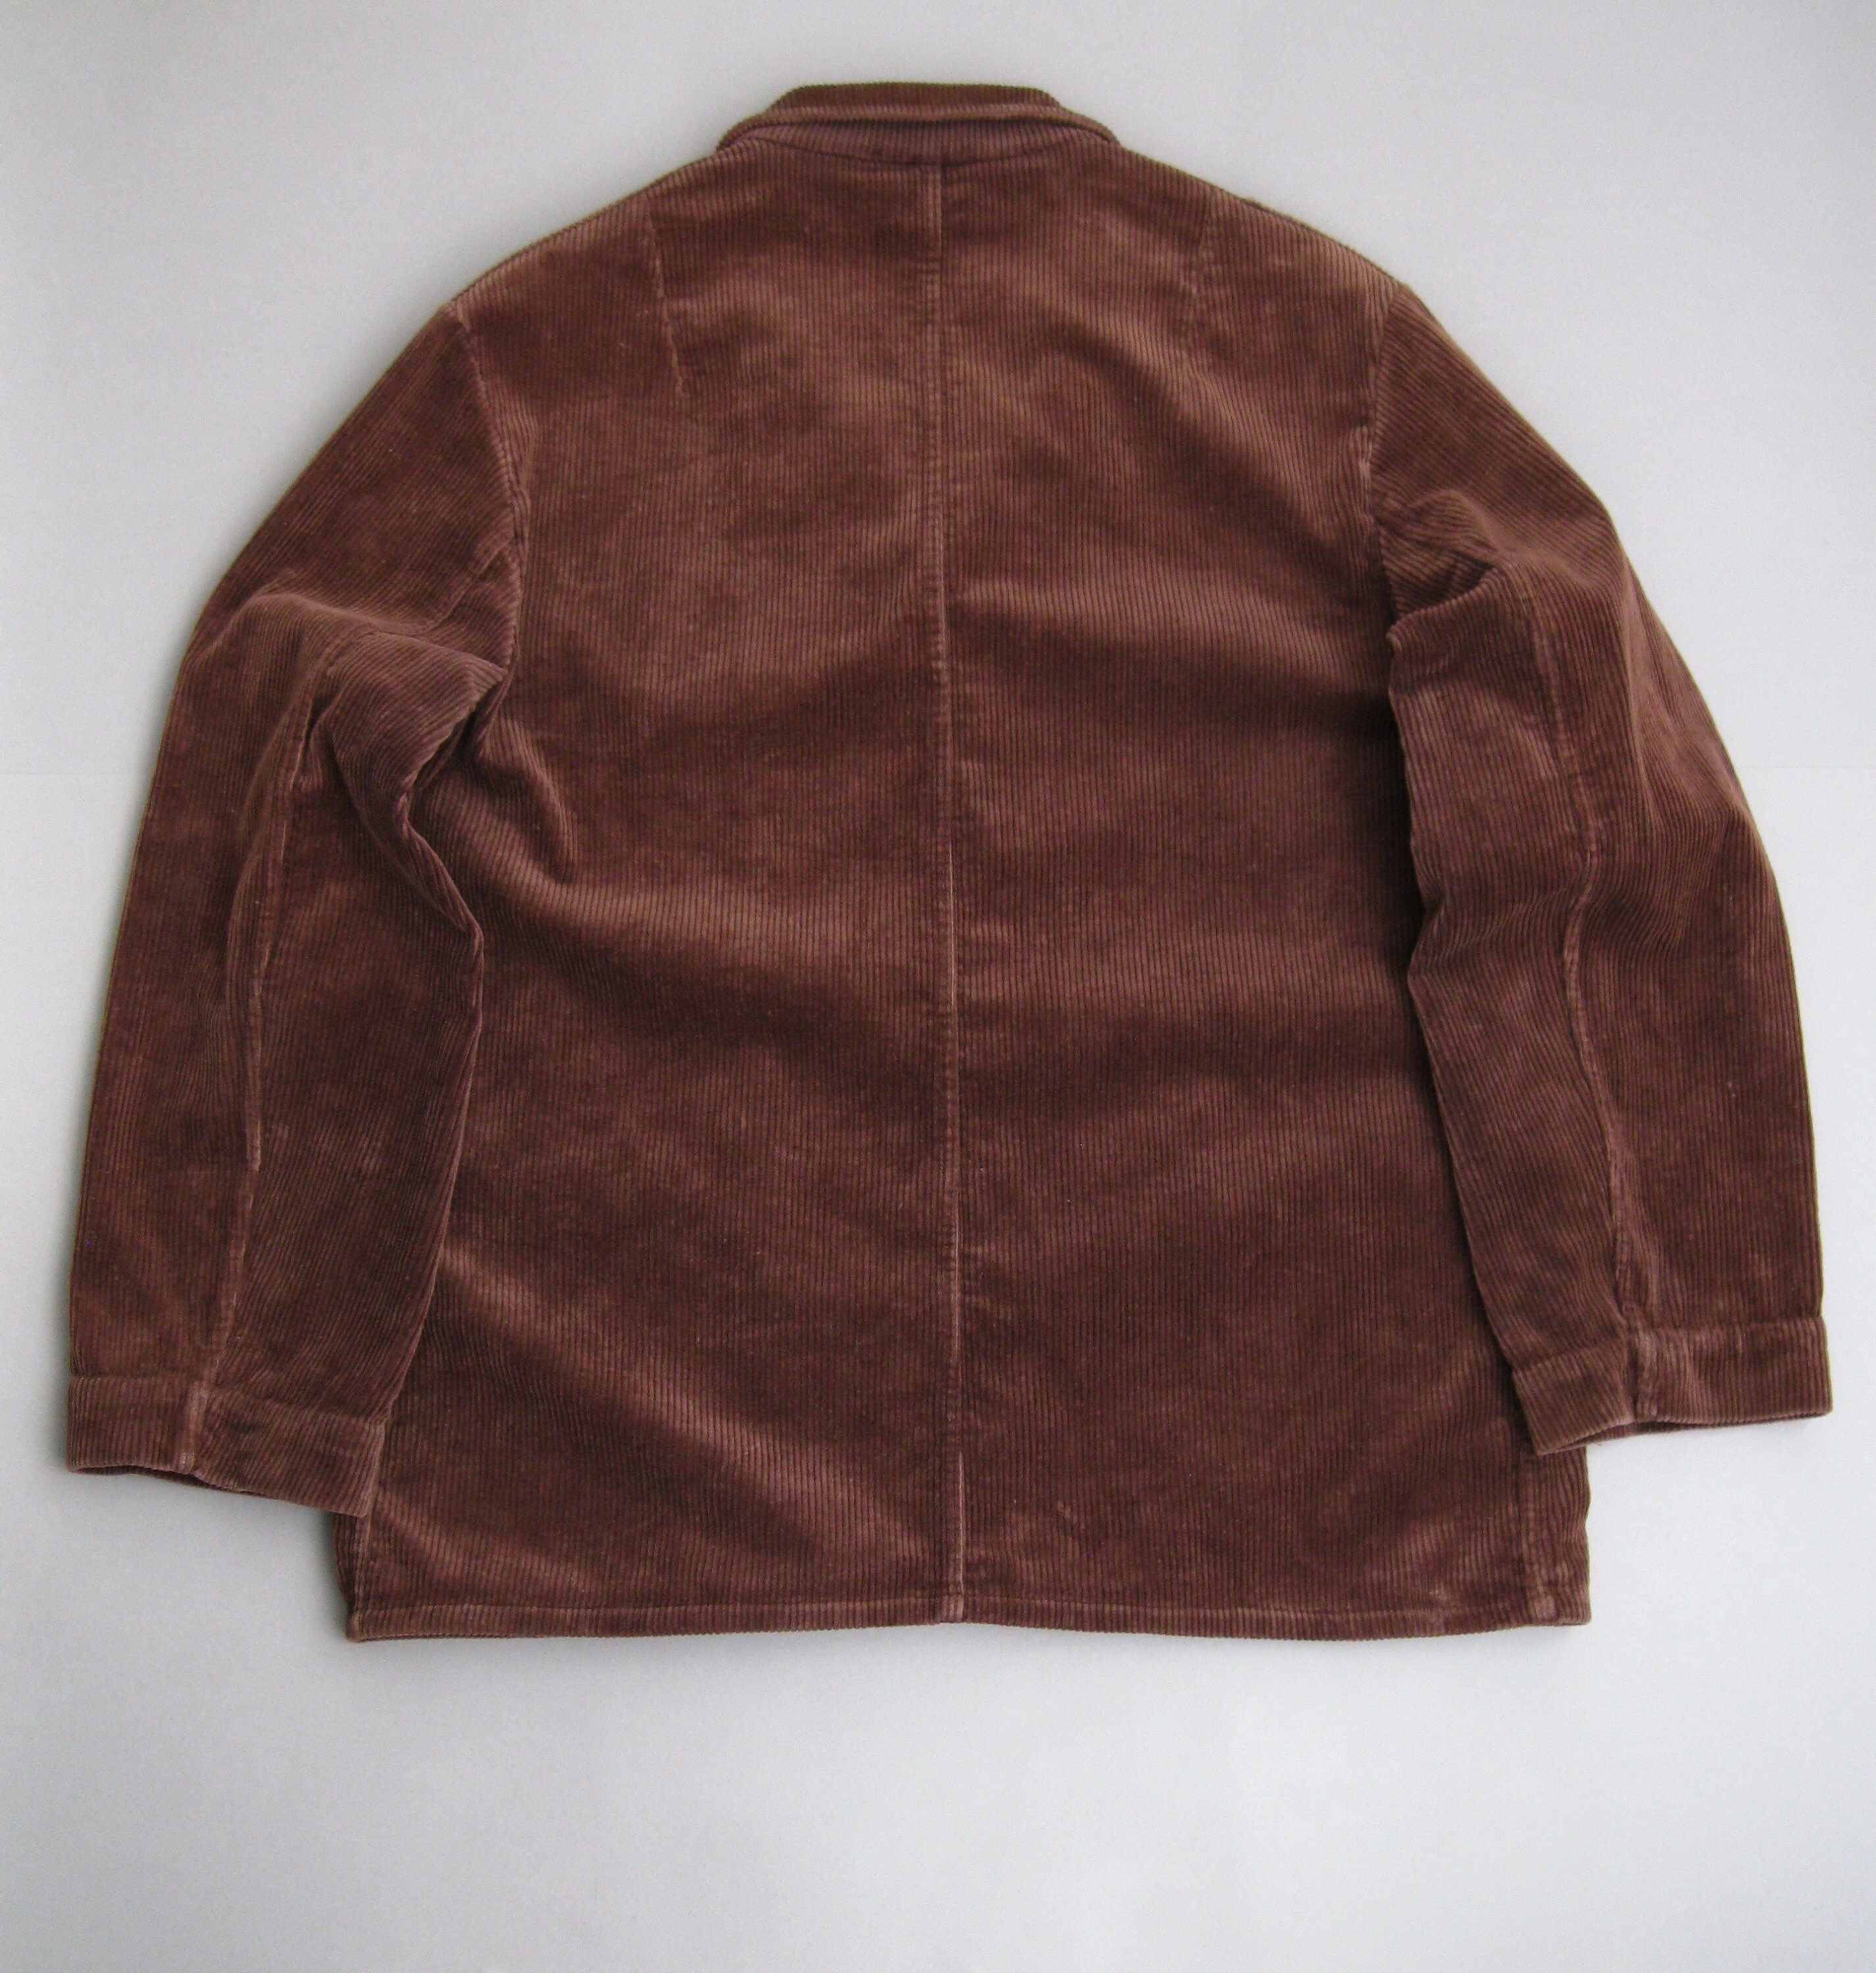 Vintage 70s Corduroy Work Jacket 1970s Workwear Size 52 - Etsy